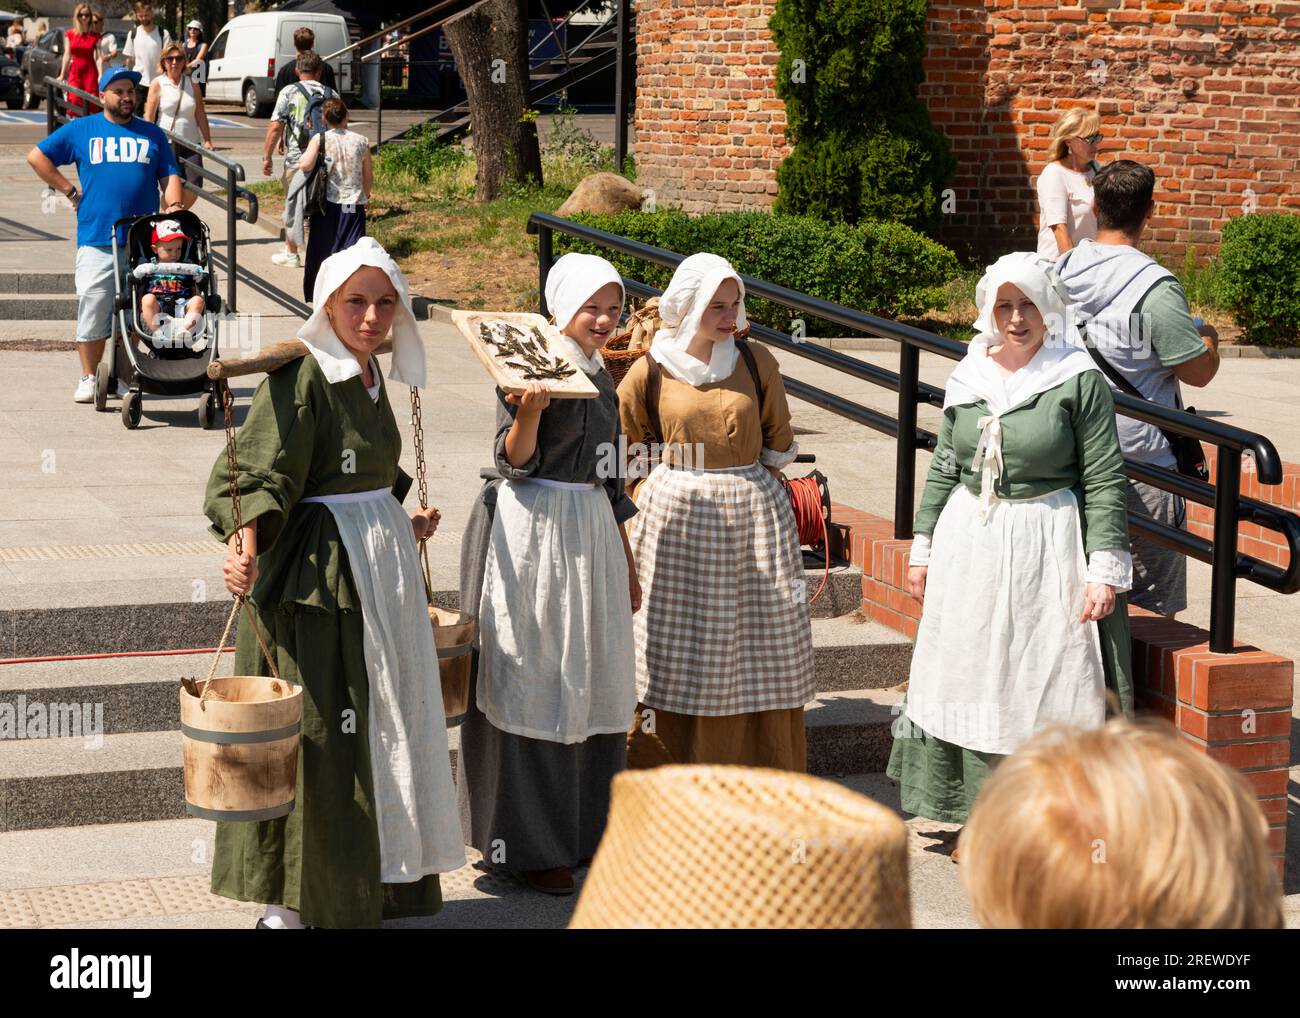 Les femmes reincarnées habillées en vendeurs de rue médiévaux à Targ Rybny ou marché aux poissons dans la vieille ville de Gdansk, en Pologne Banque D'Images